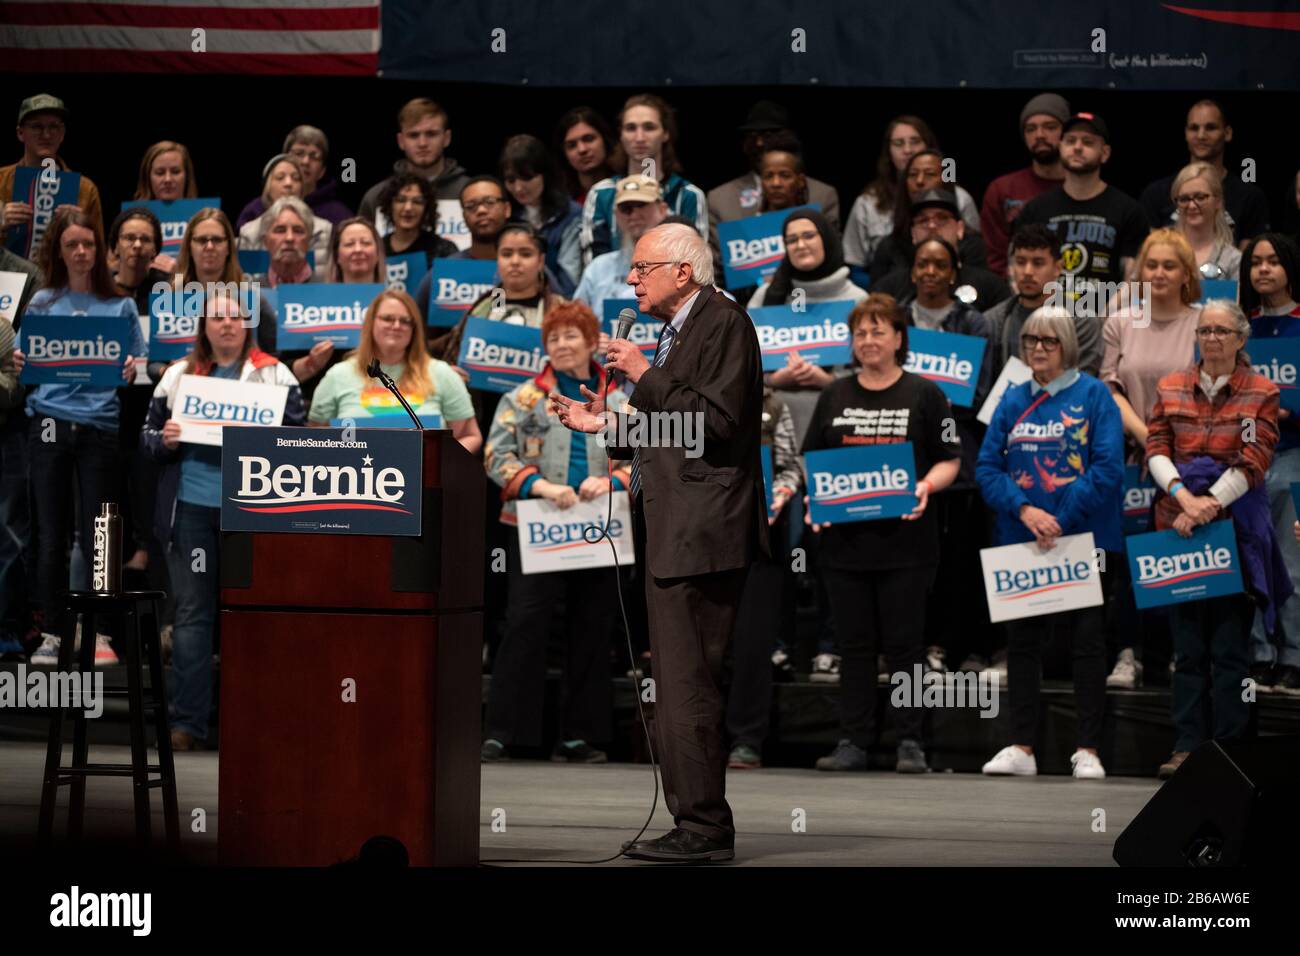 Saint Louis, MO, USA - 9. März 2020: Senator Bernie Sanders spricht bei der Bernie 2020 Rallye in der Innenstadt von Saint Louis an Unterstützer. Stockfoto